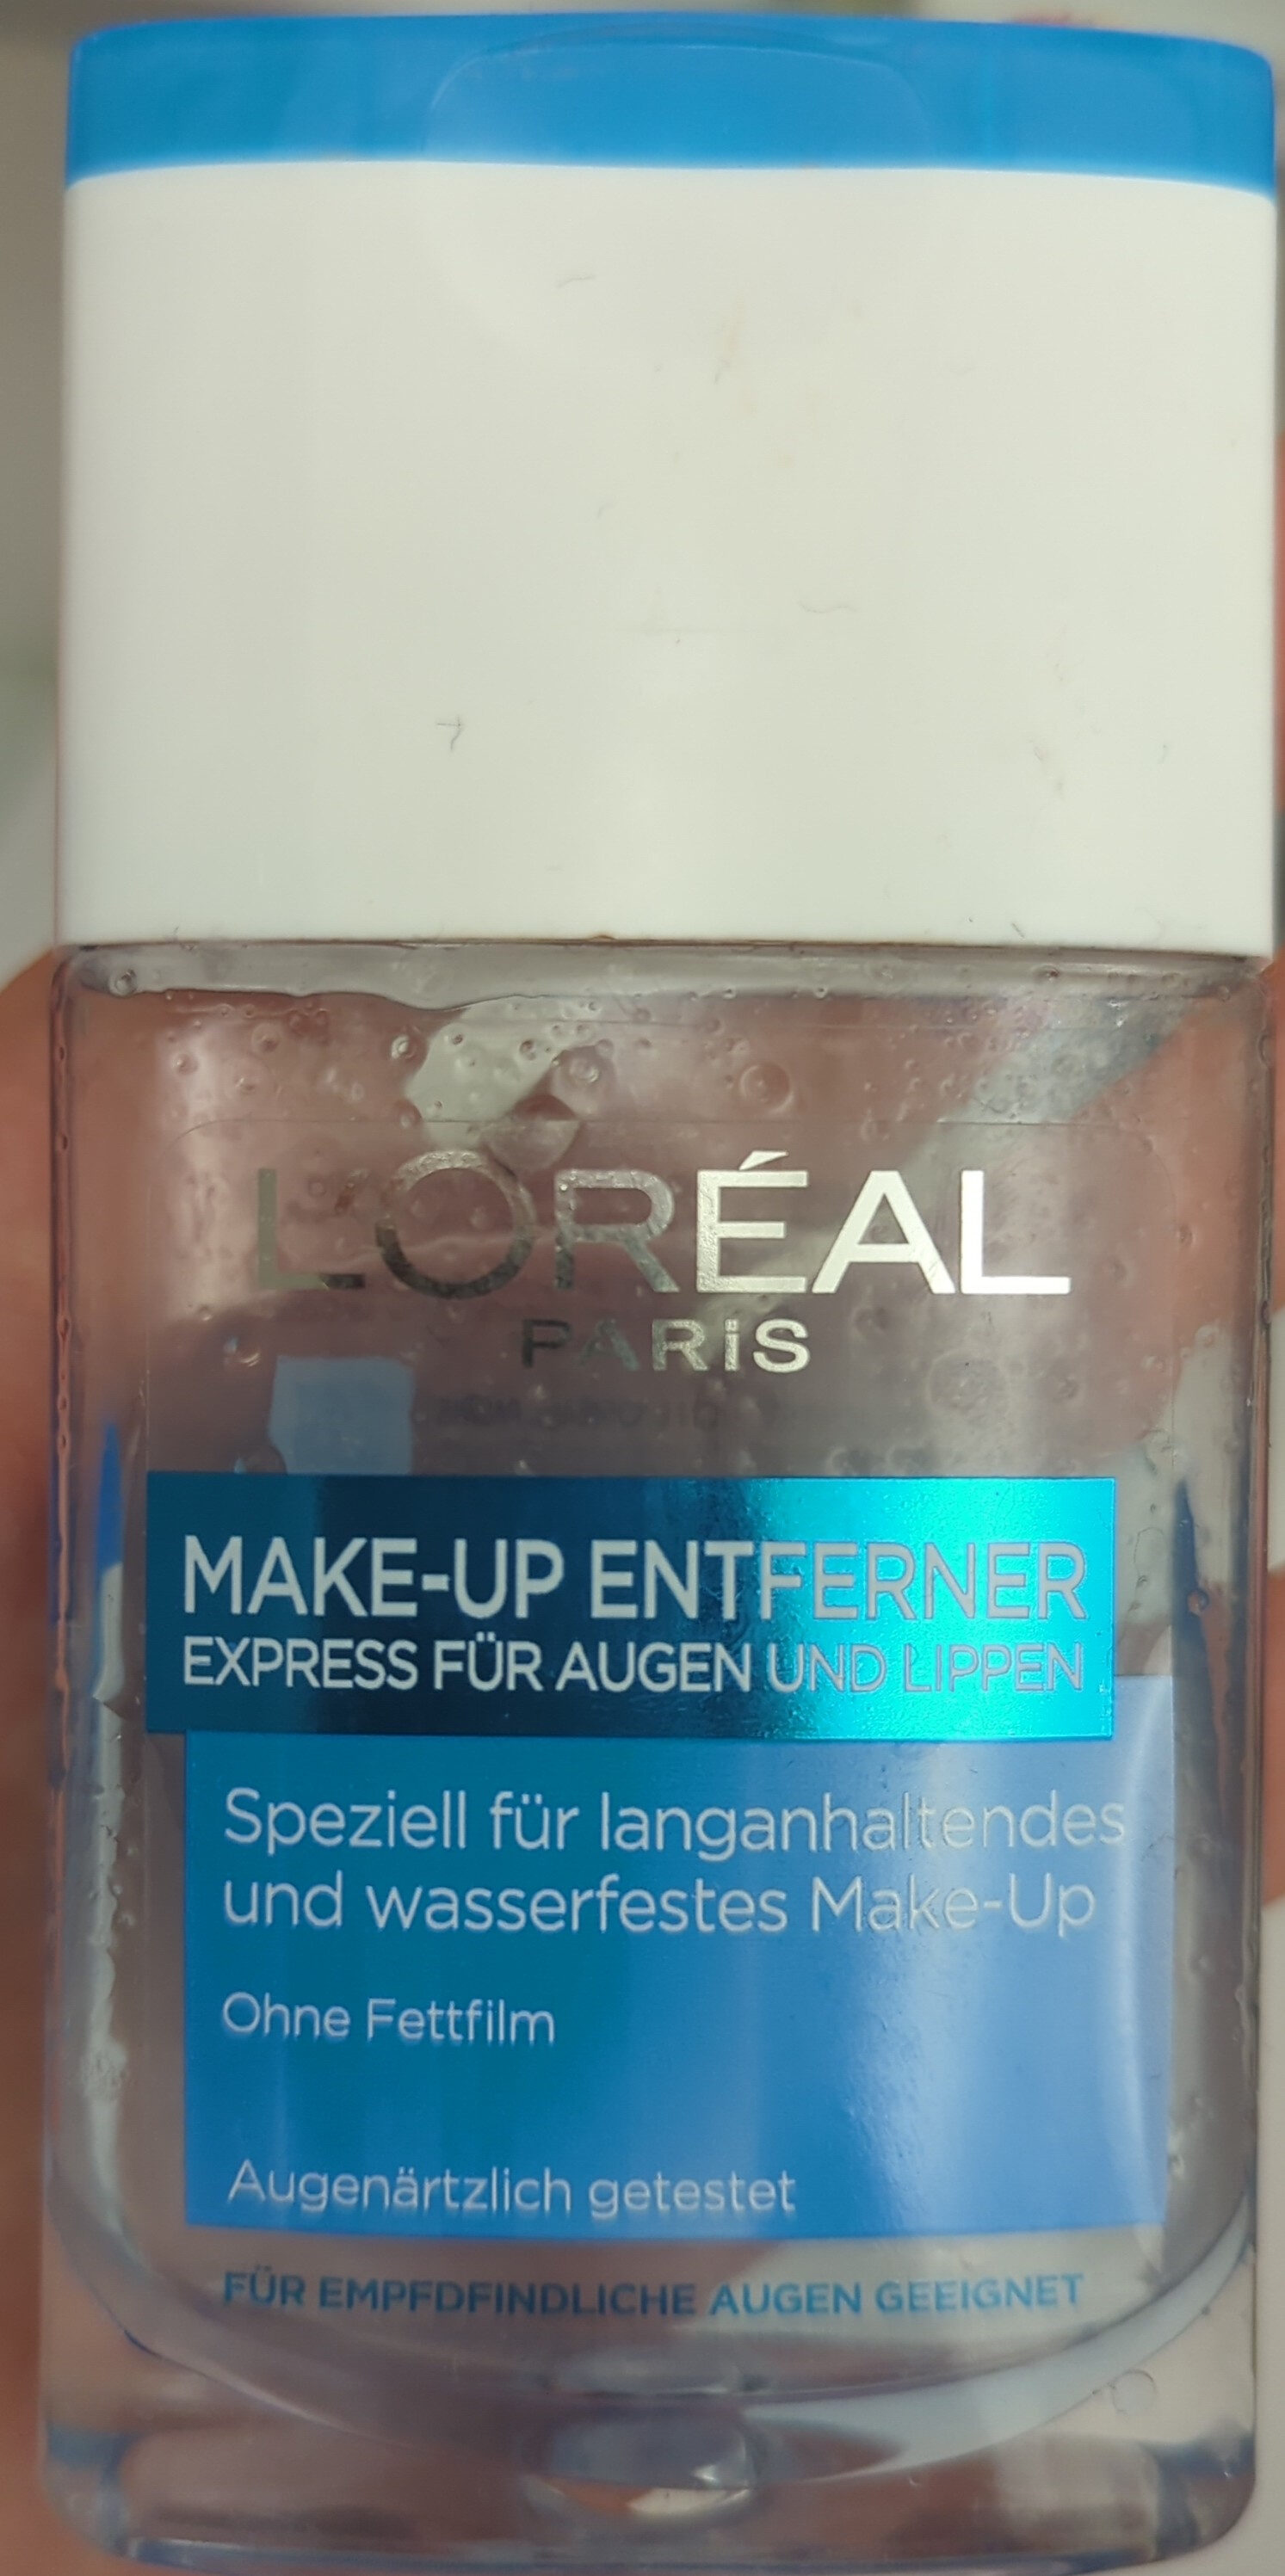 Make-up Entferner - Product - de